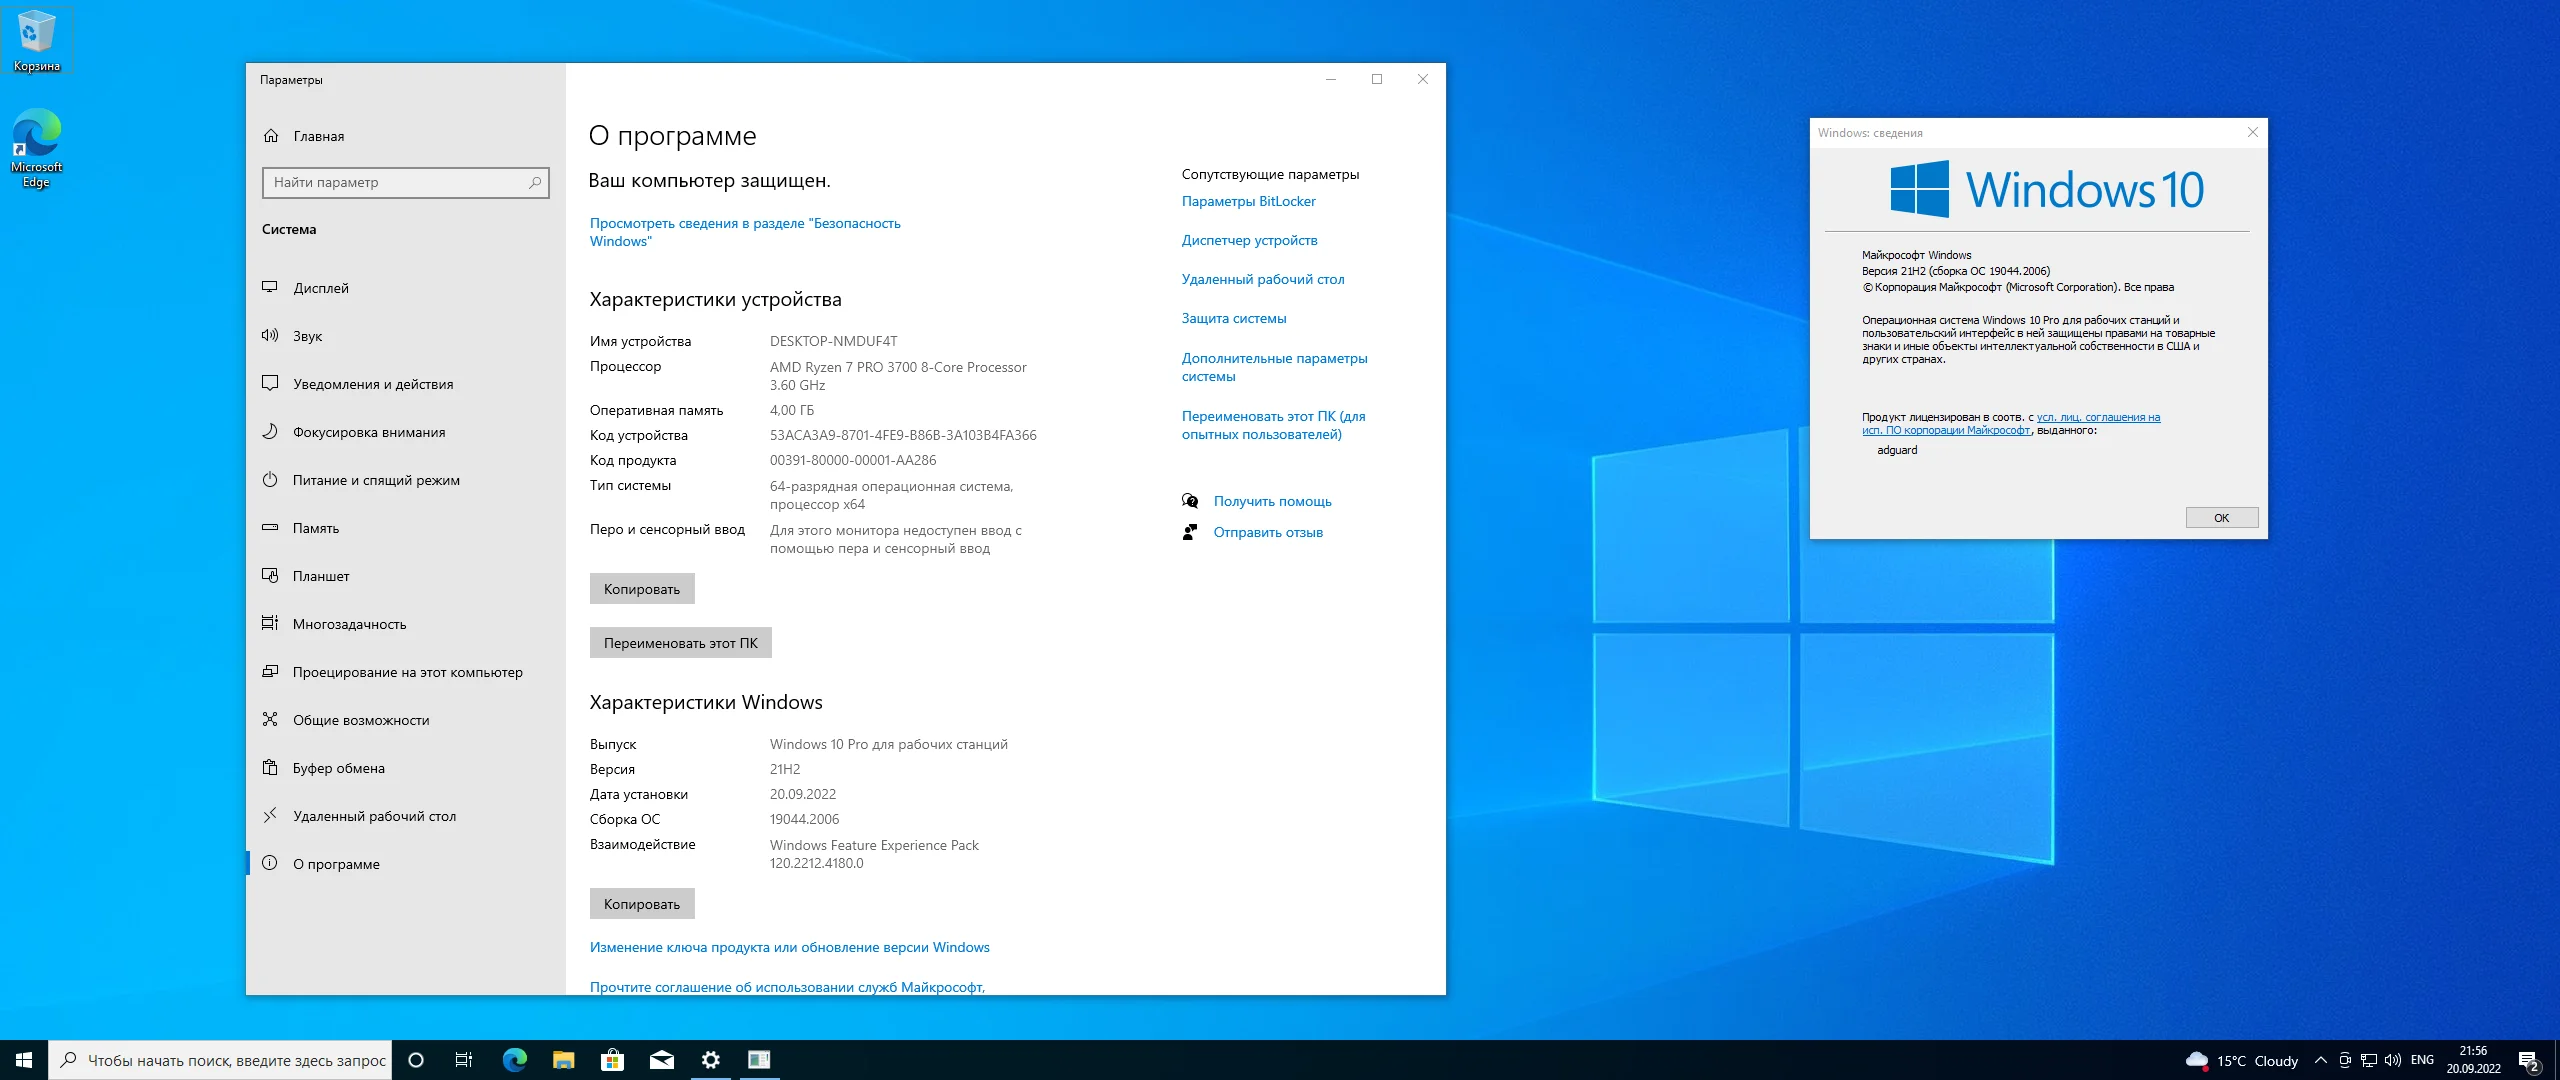 Виндовс 10 информация. ОС Microsoft Windows 10. Windows 10 профессиональная. Старая версия виндовс 10. Windows 10 Pro 21h1.